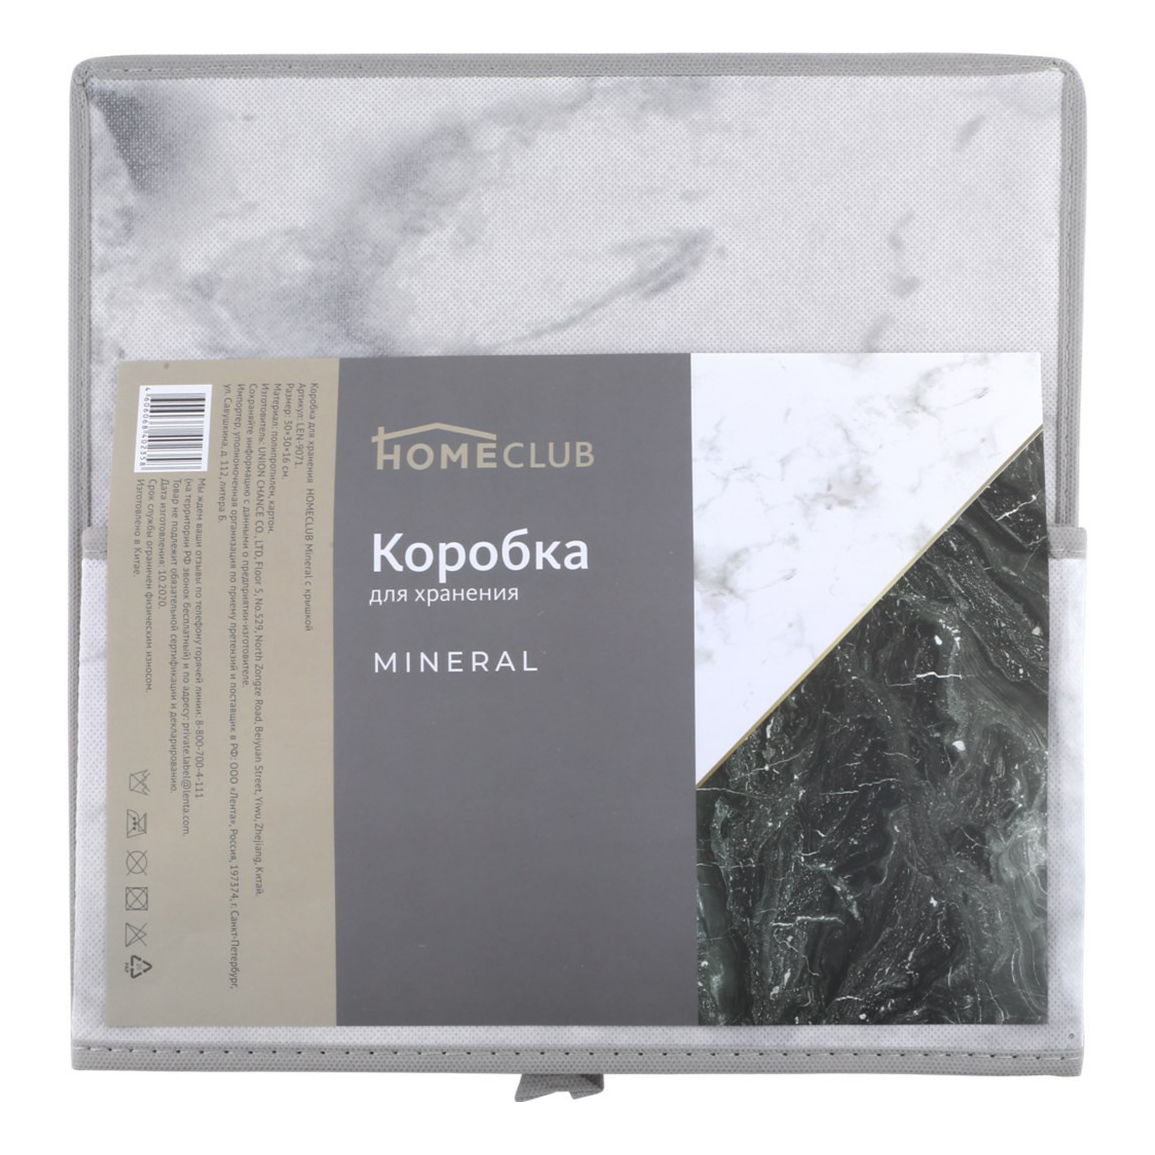 Коробка универсальная Homeclub Mineral с крышкой 30 x 16 x 30 см серая